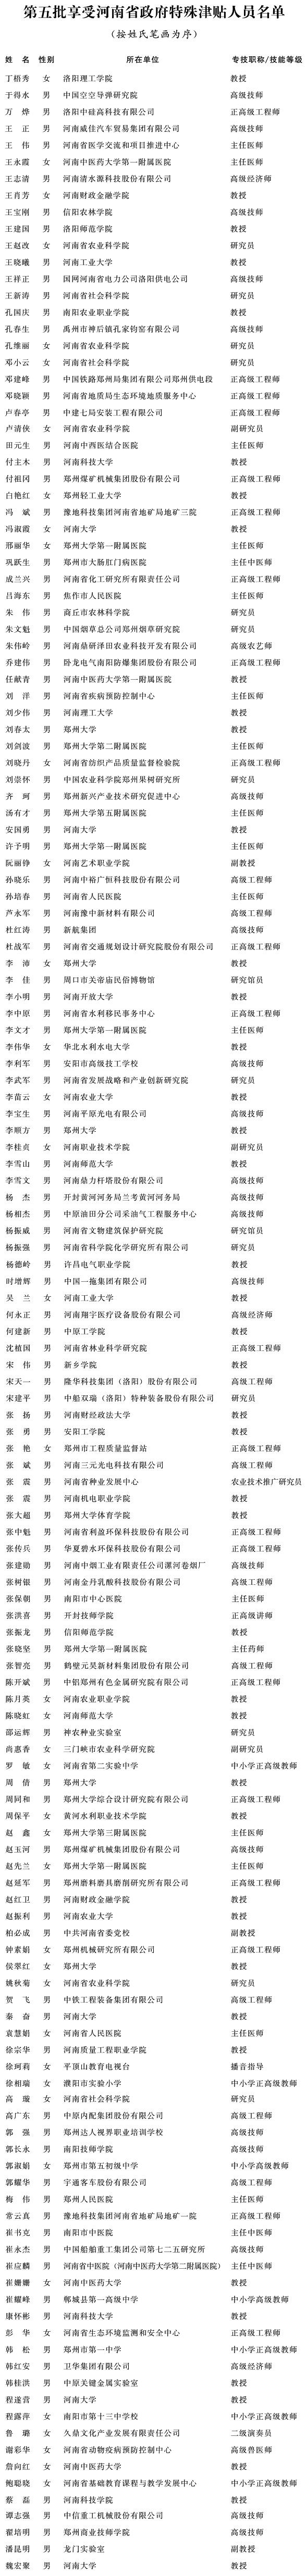 河南省人民政府办公厅关于公布第五批享受河南省政府特殊津贴人员名单的通知